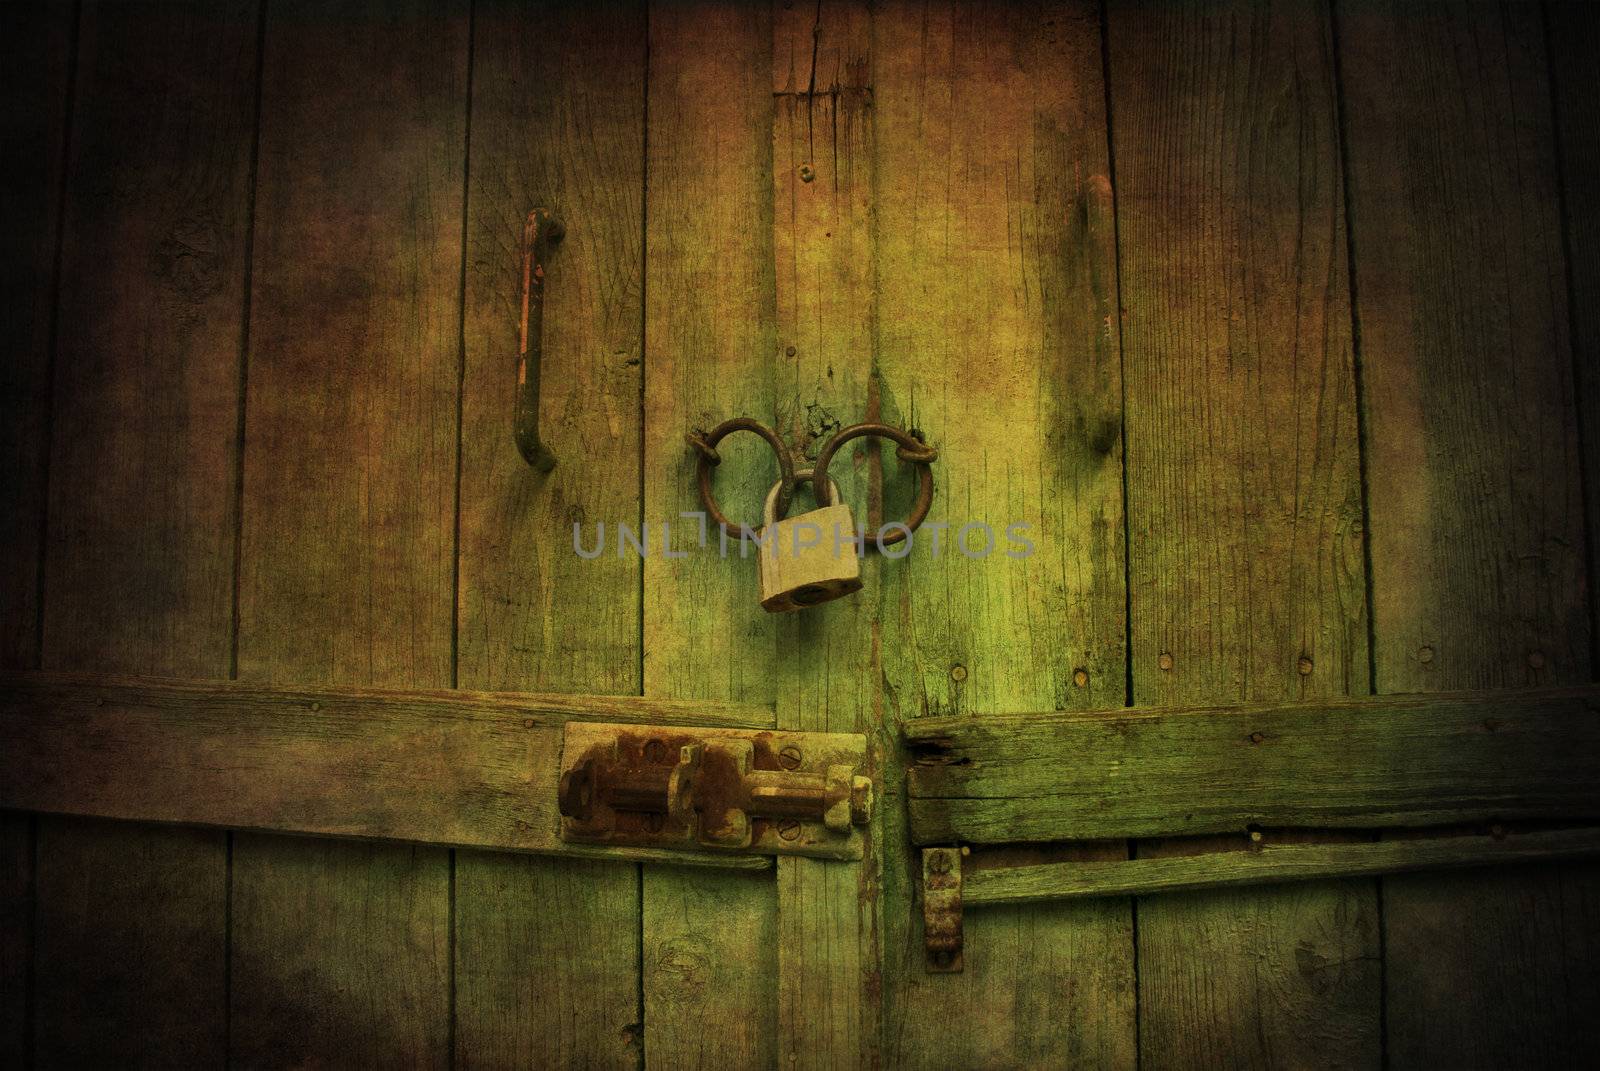 Locked wooden door with padlock